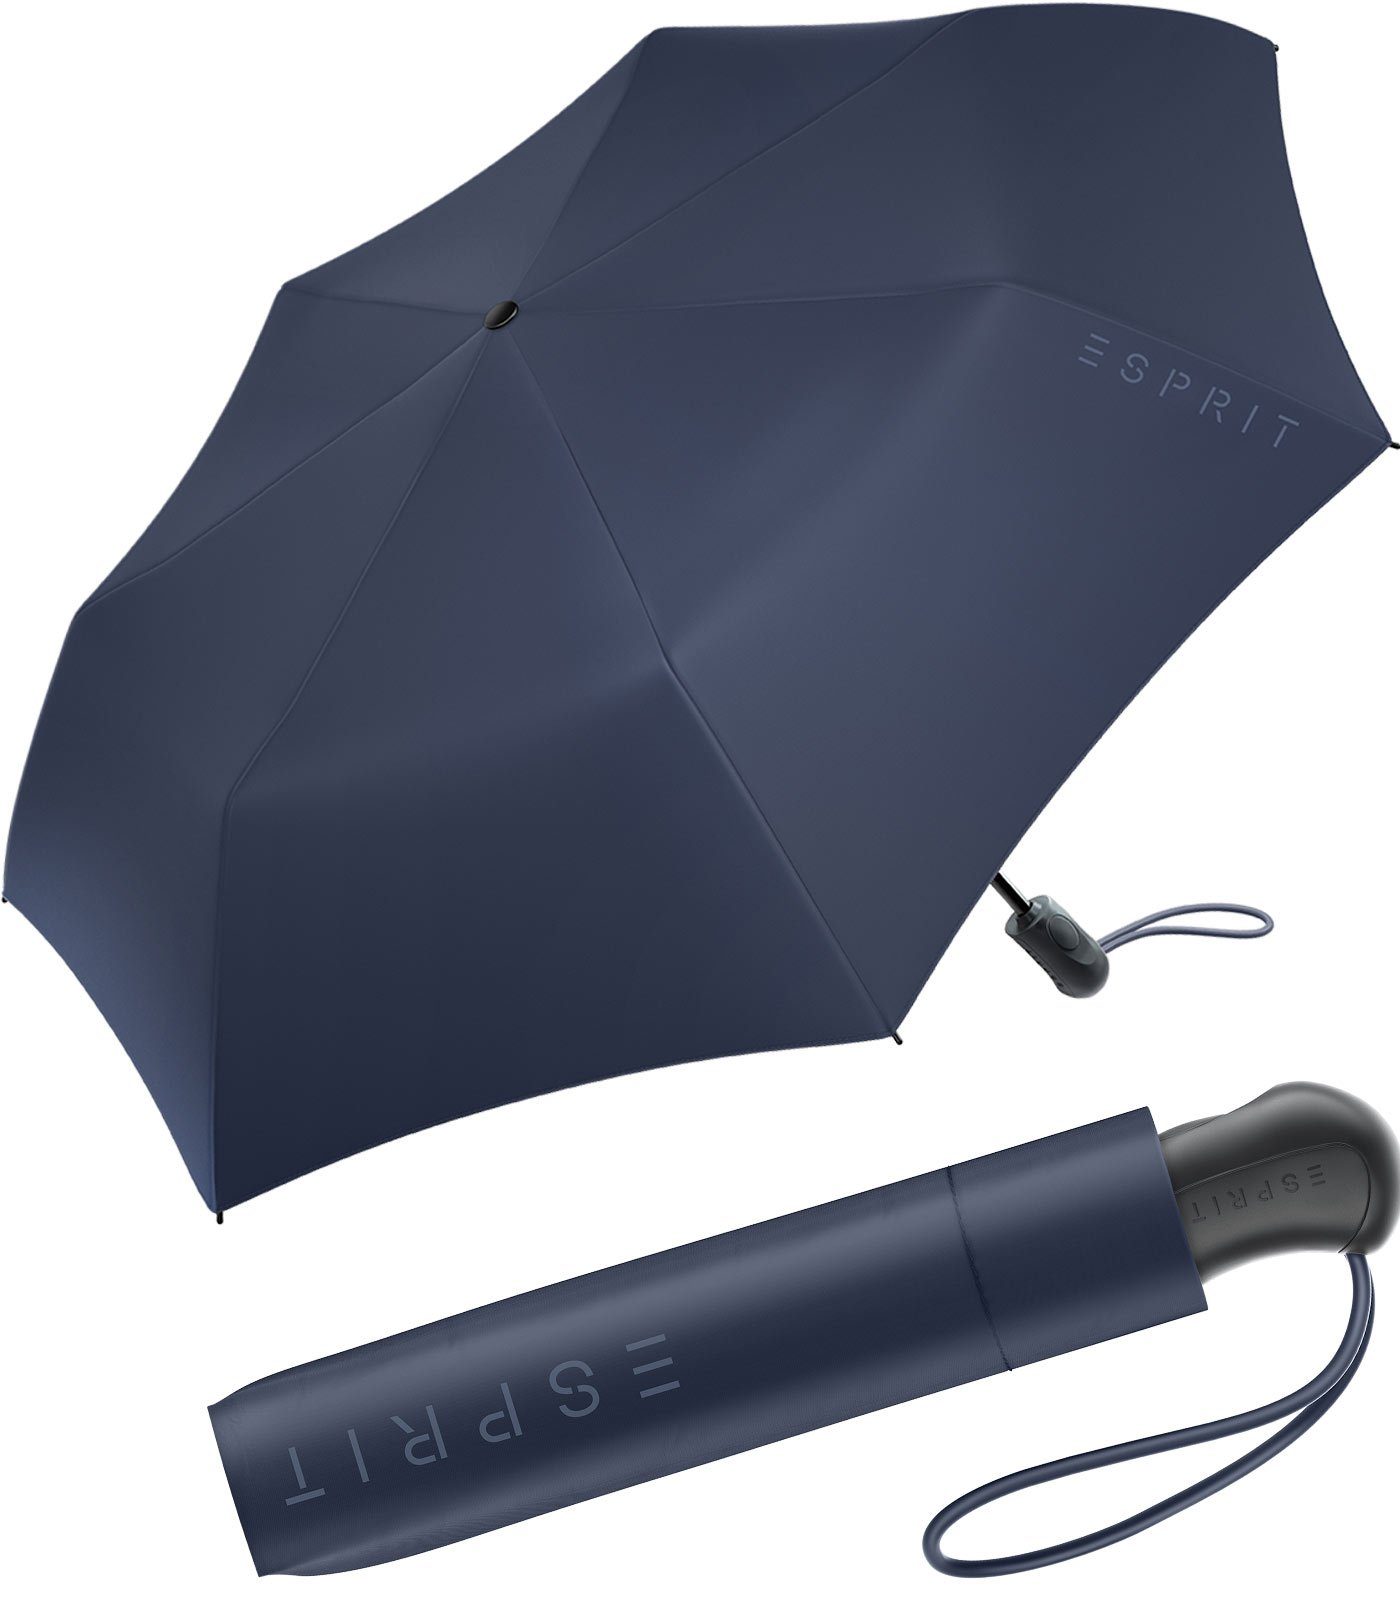 Automatik, Auf-Zu praktisch stabil navy Light mit Schirm Esprit Easymatic Taschenregenschirm und